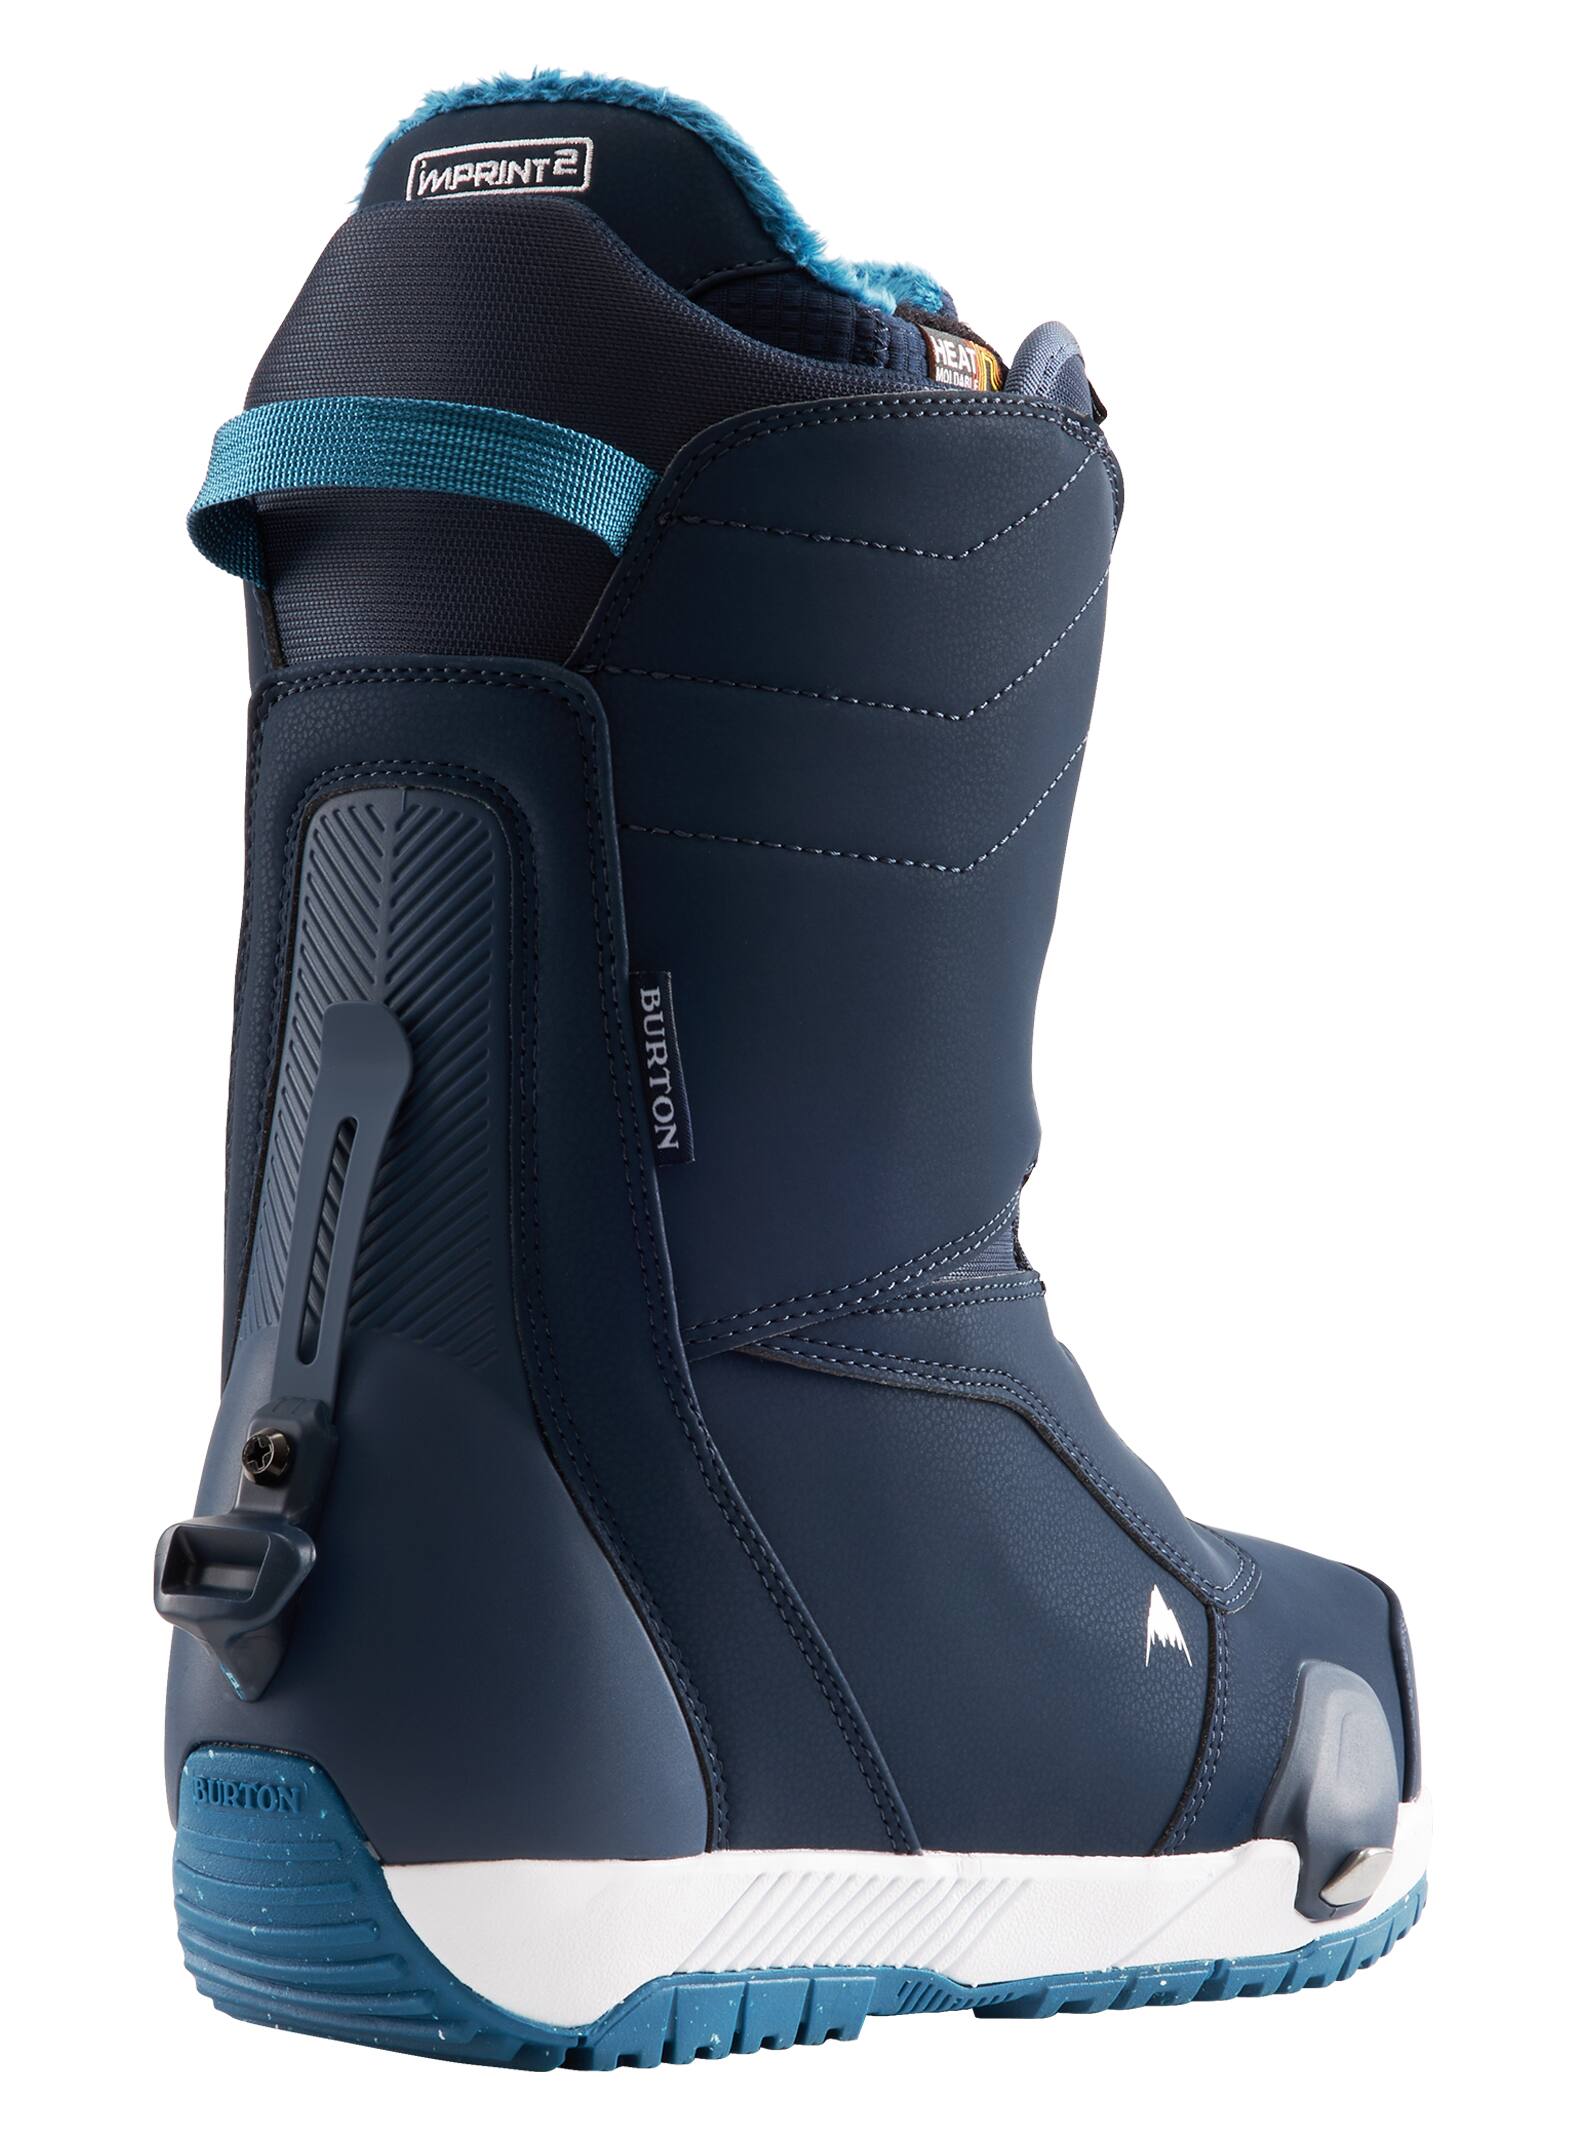 Men's Snowboard Boots | Burton Snowboards FR